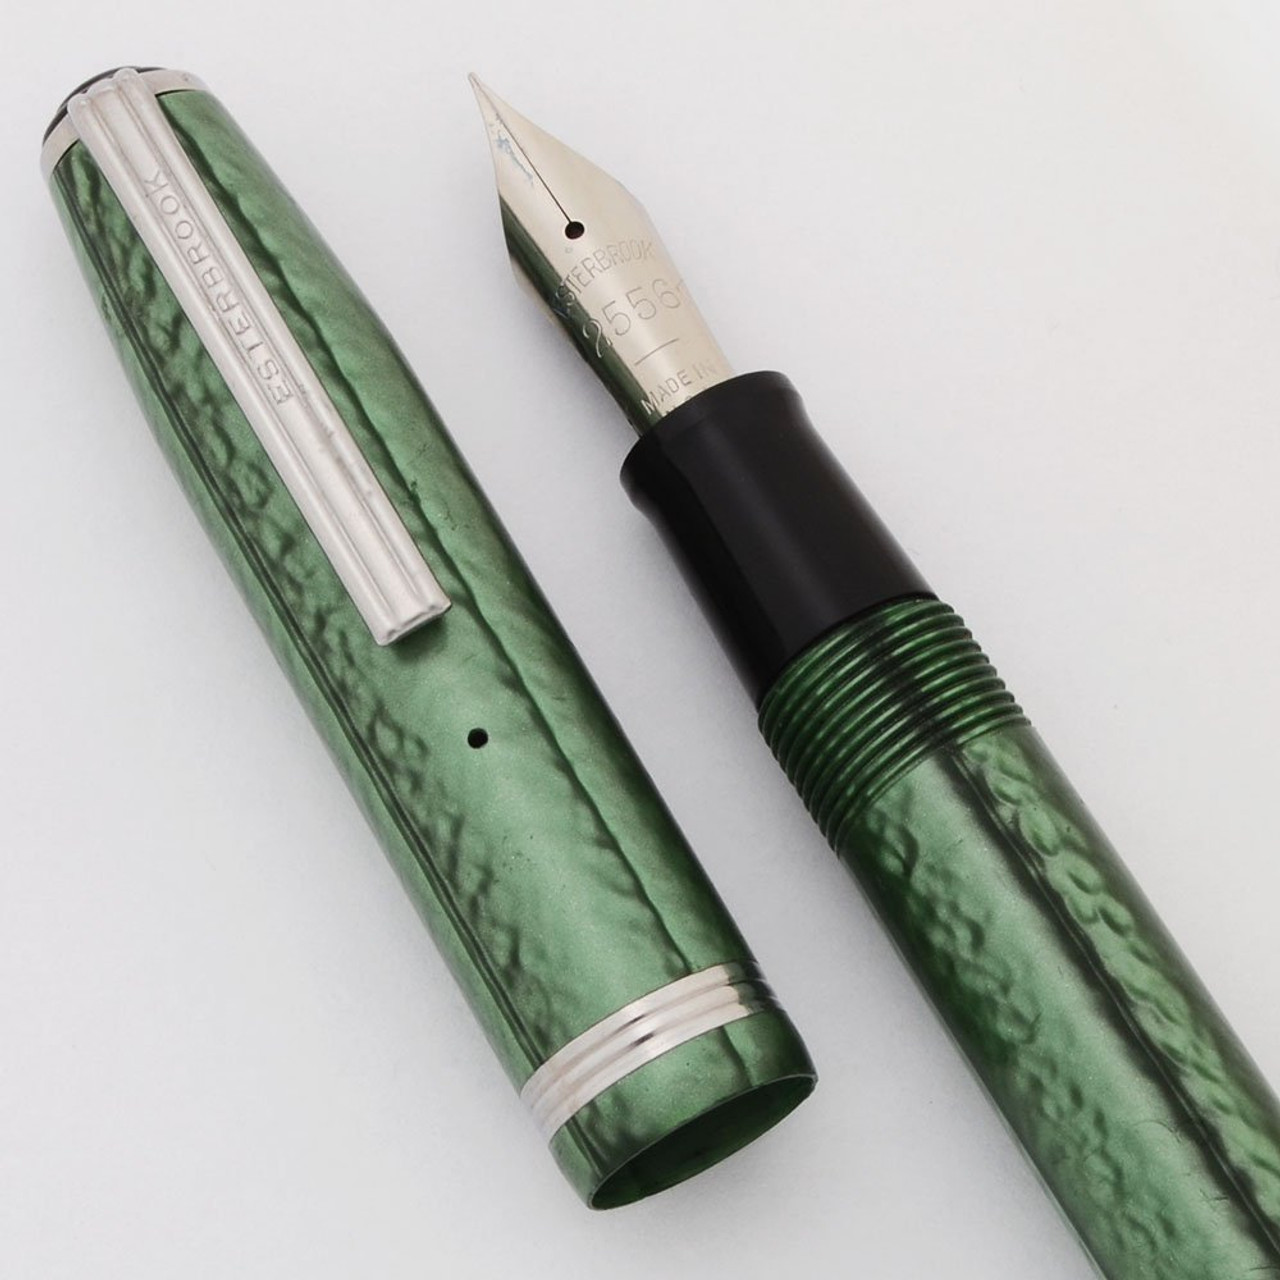 Esterbrook LJ Fountain Pen (1950s)- Fern Green, Lever Filler, 2556 Firm Fine Nib (Excellent +, Restored)